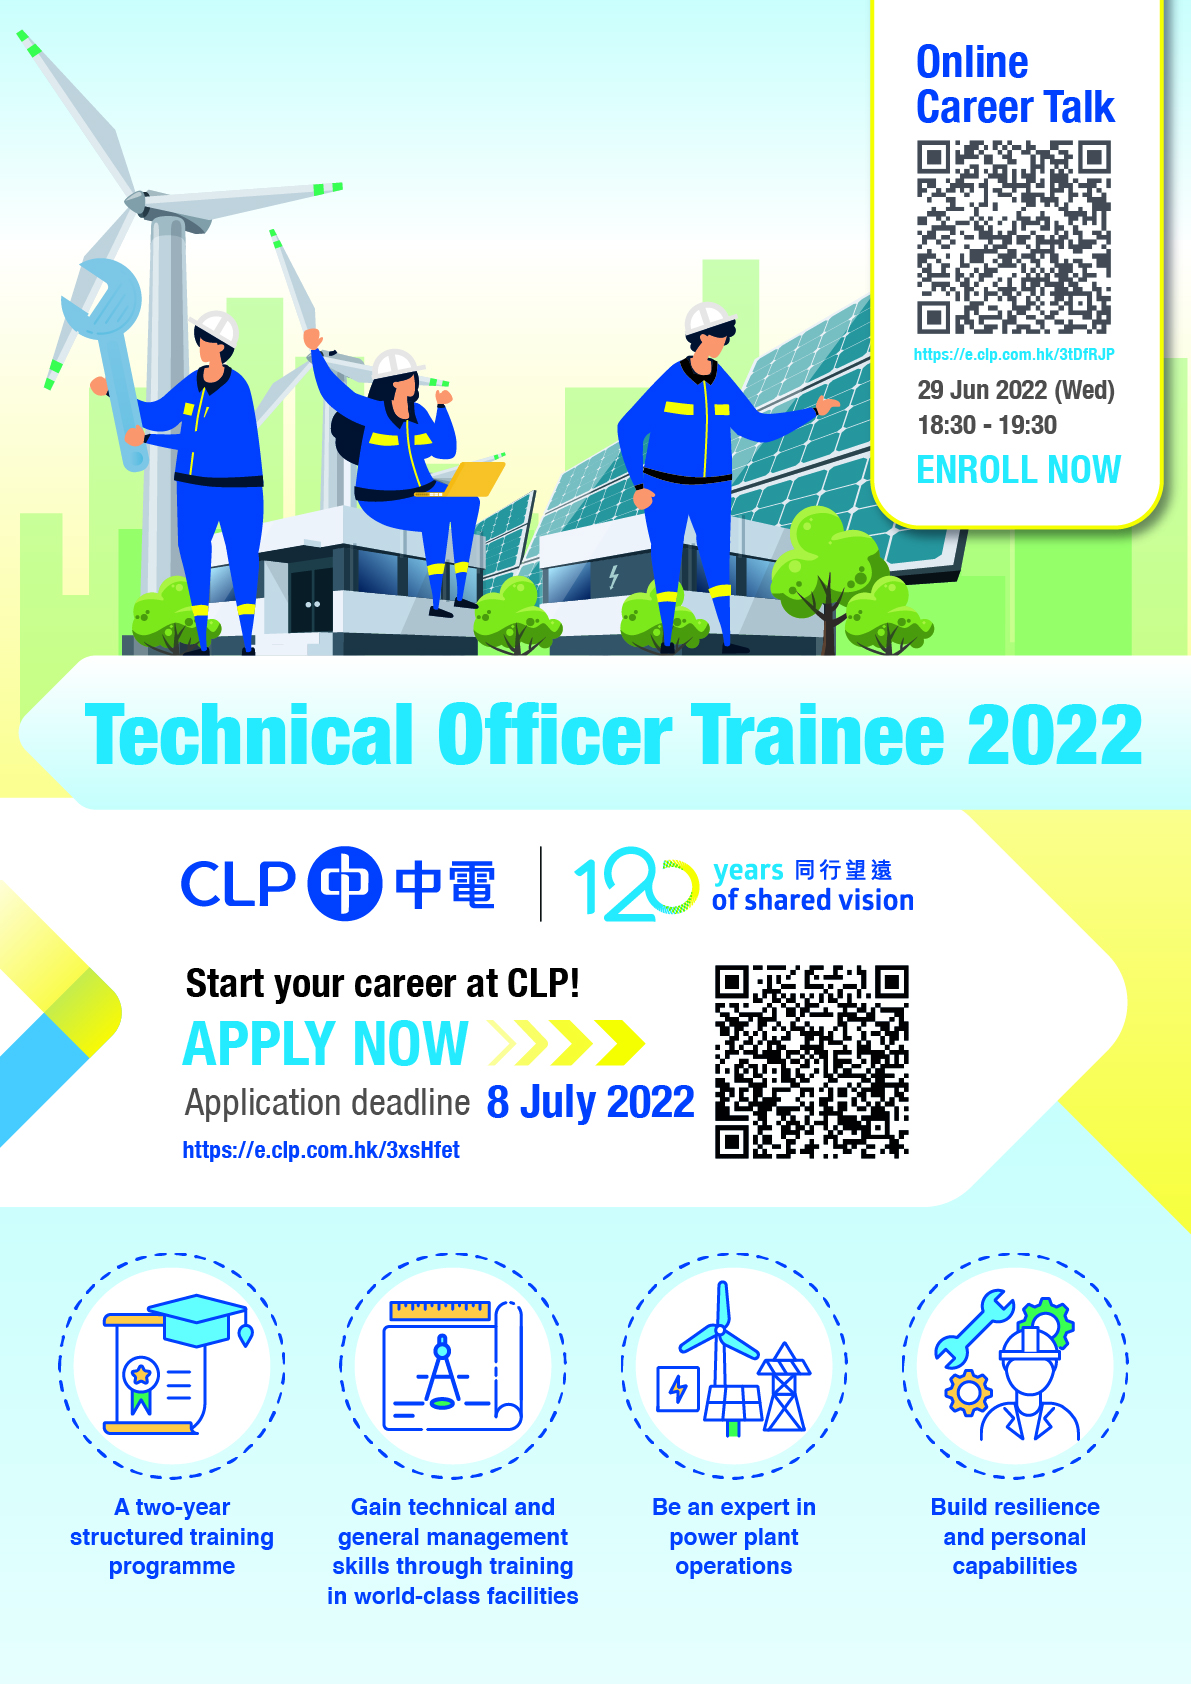 CLP-2022 Technical Officer Trainee Programme Recruitment - ENG